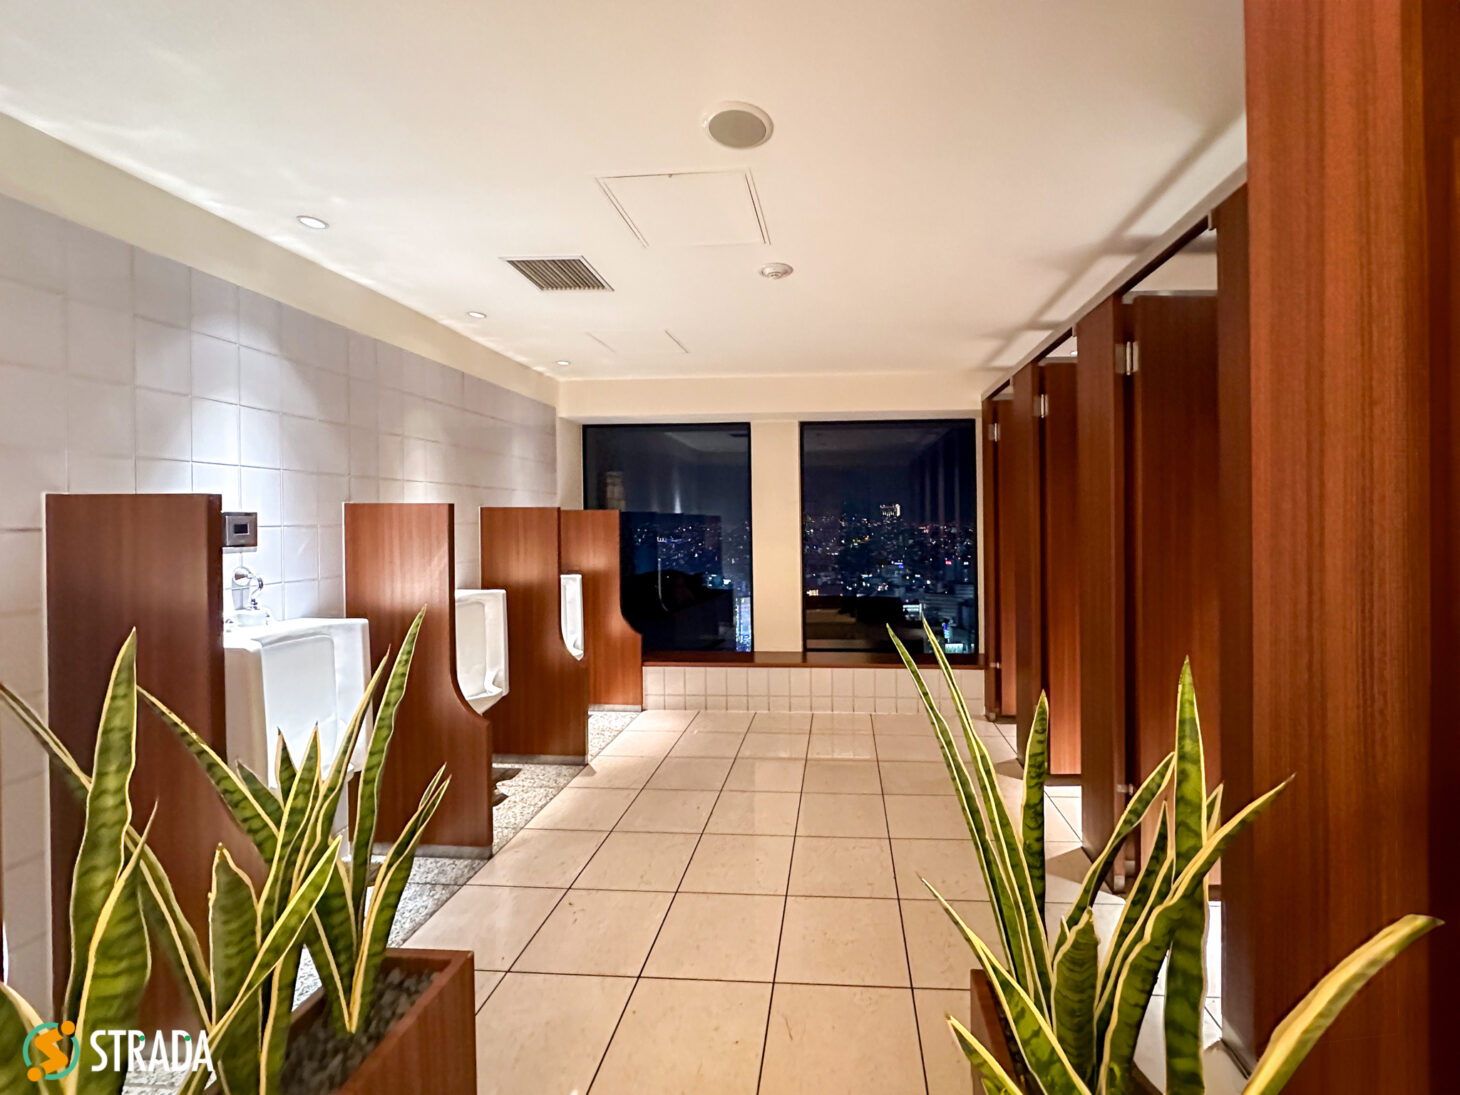 お客様の新年祝賀パーティーの撮影で新宿京王プラザホテルへ。トイレに行ったら、あまりにも綺麗すぎで眺めが良すぎで「おっ!」って。